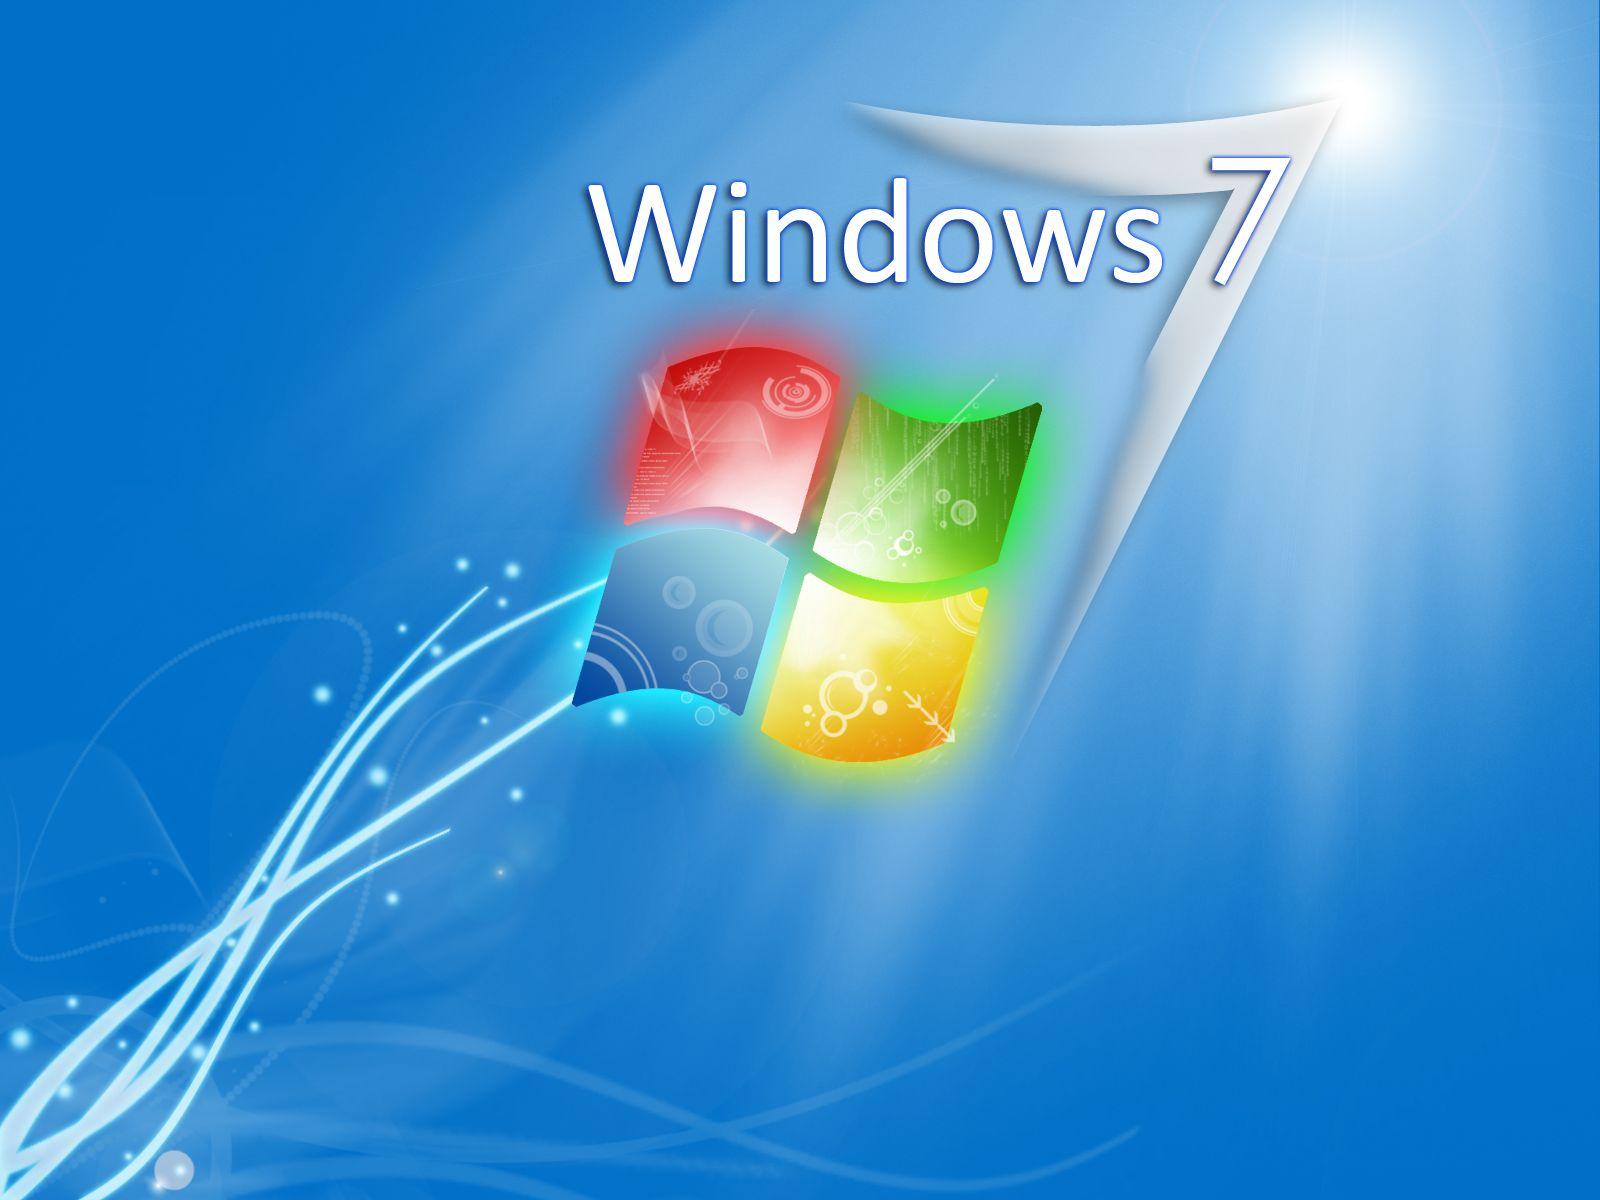 wallpaper: Create A Windows 7 Wallpaper